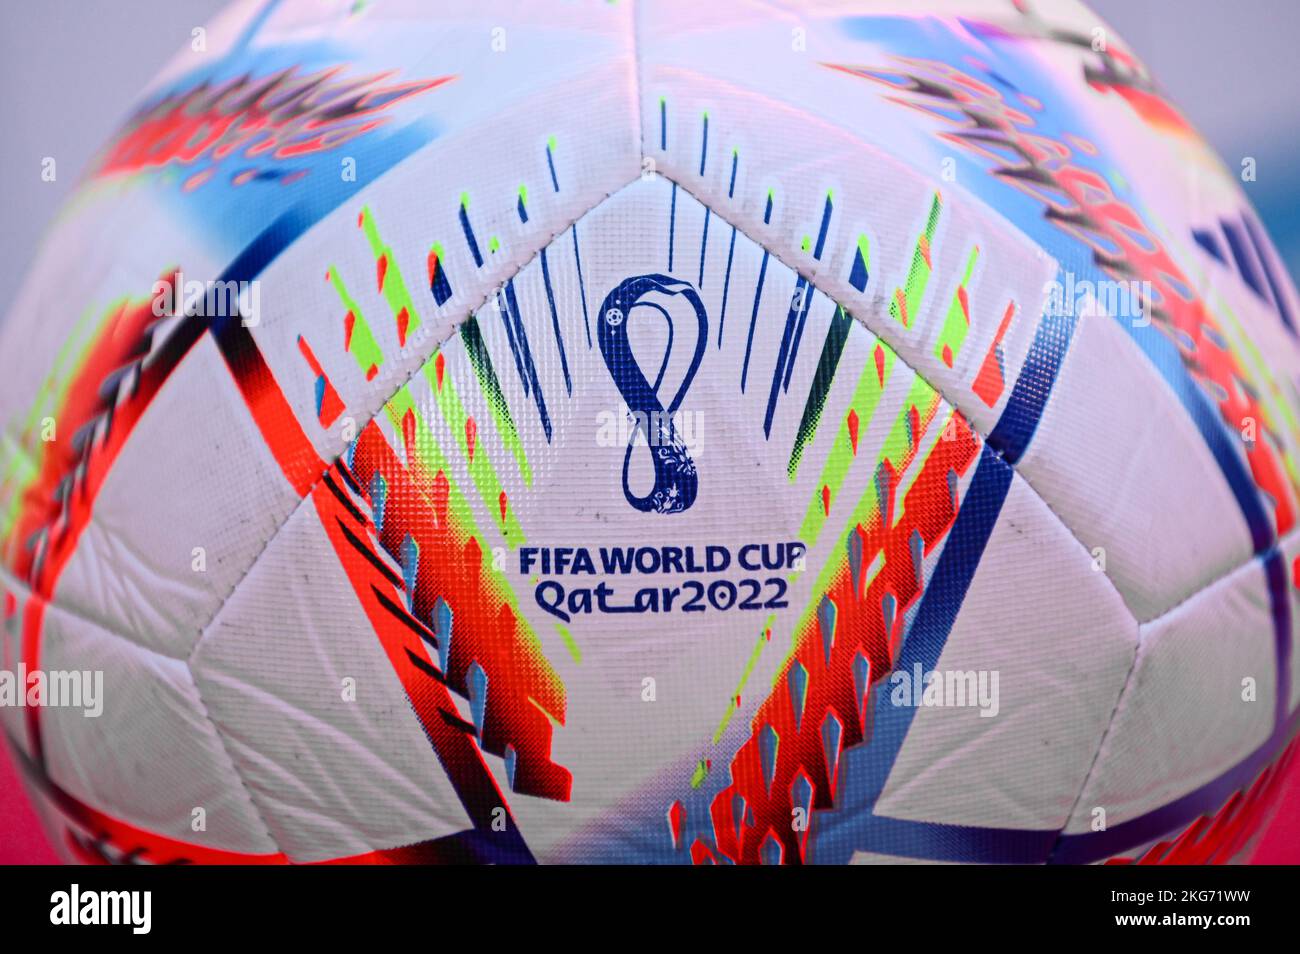 Milano, Italia - Novembre 20: La palla ufficiale chiamata ‘al Rihlaa’ da Adidas, la palla Qatar World Cup 2022 Foto Stock